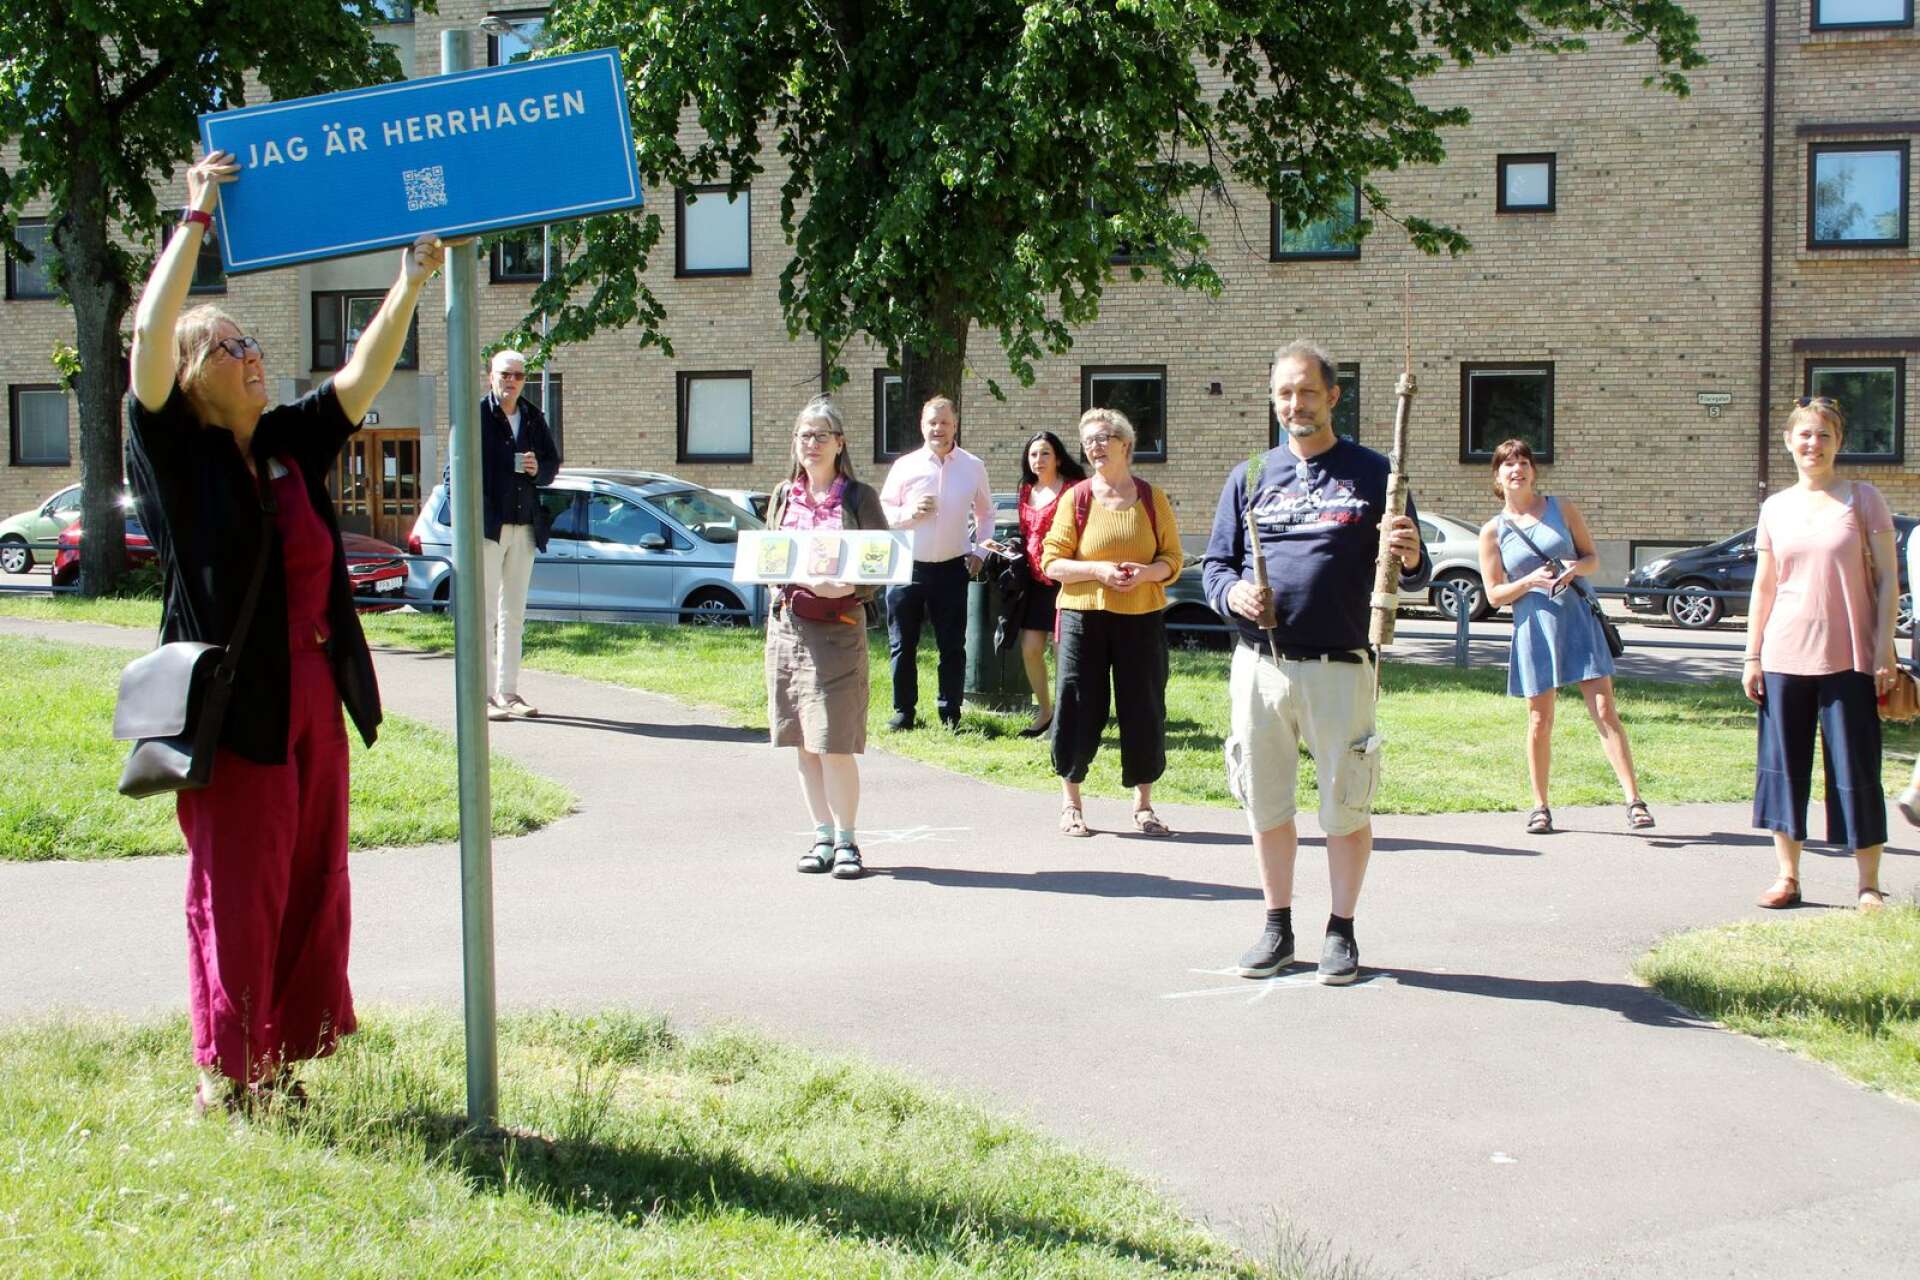 Margaretha Jansson sätter upp skylten som ger besökarna koden till hennes bildspel med människor på Herrhagen. Det är en av punkterna på vandringen där totalt 14 konstnärer ställer ut sina verk.